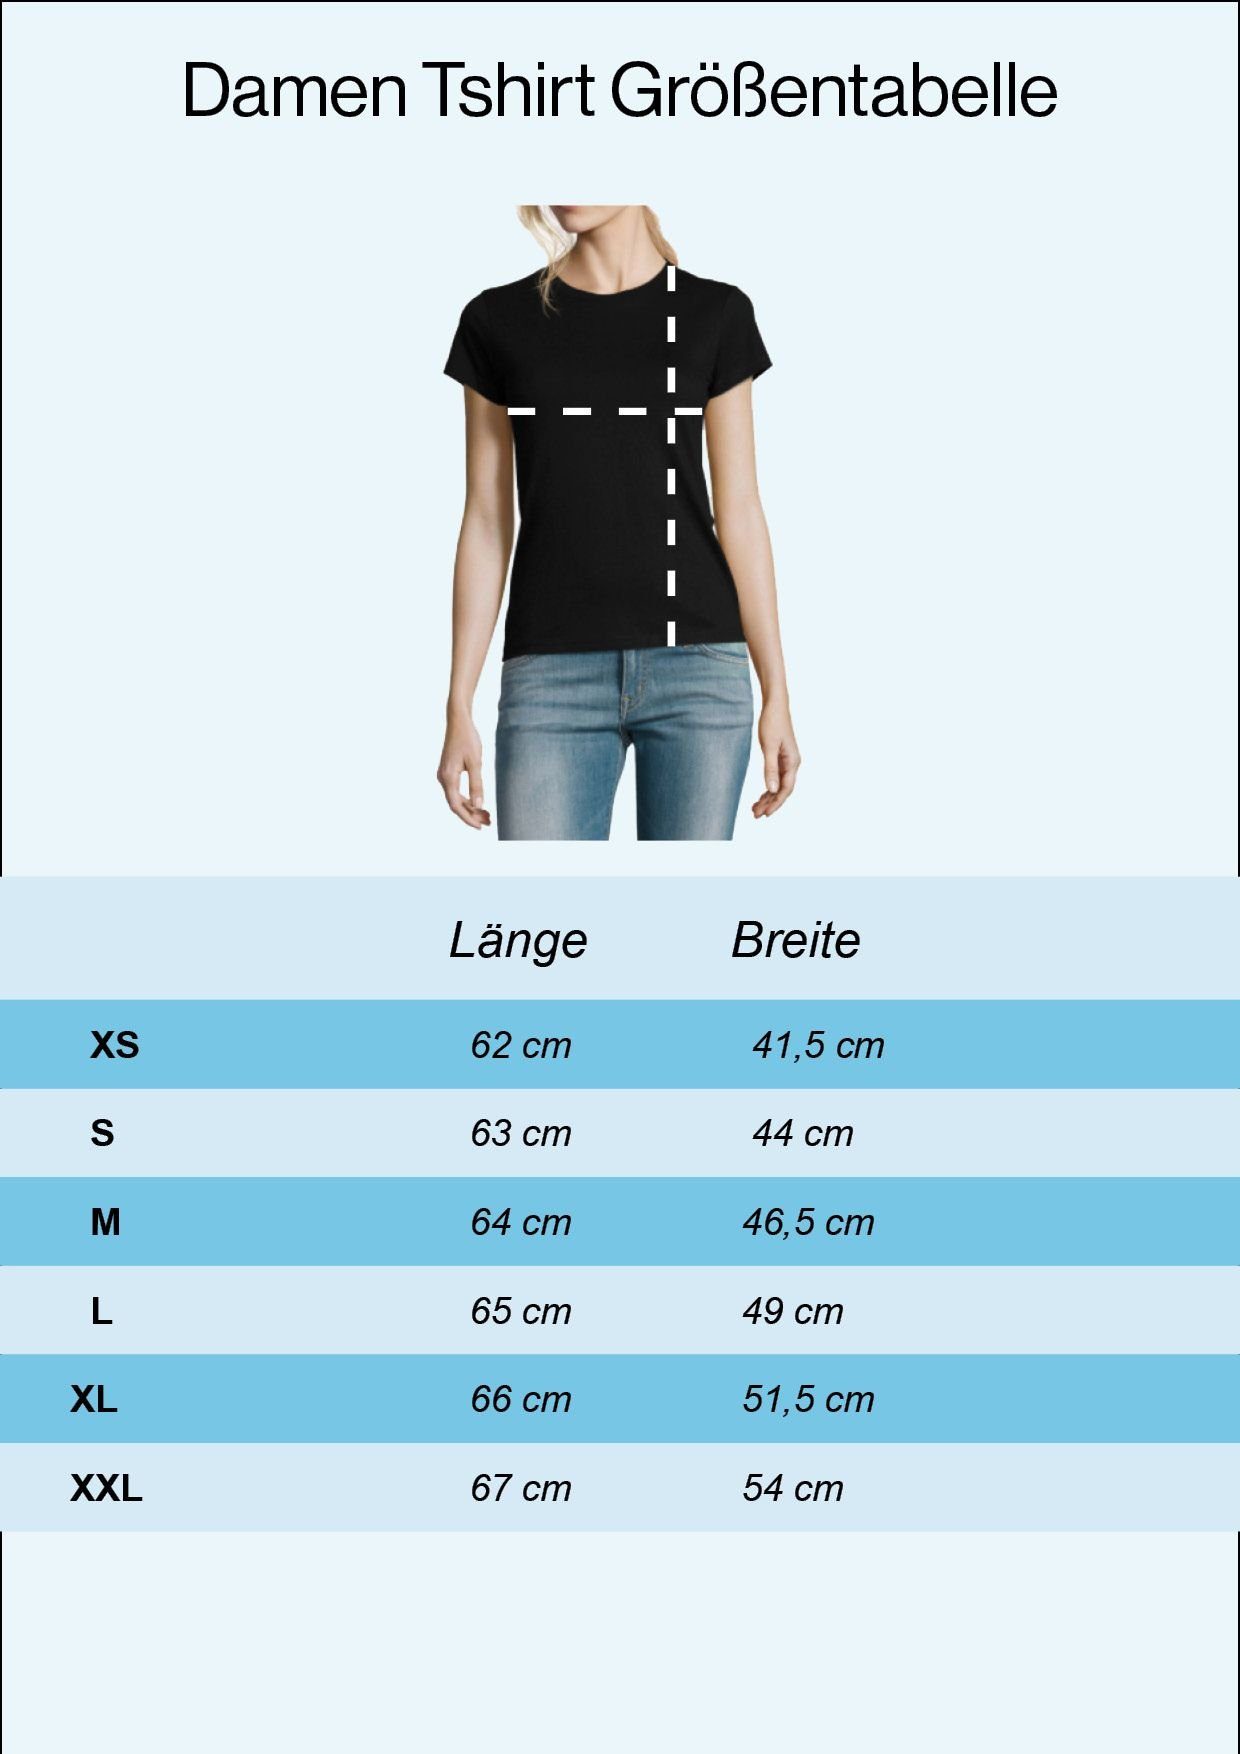 ALT ERST BIST Designz Youth Damen T-Shirt BEIM Grau Print Shirt modischem DU Mit ARCHÄOLOGEN